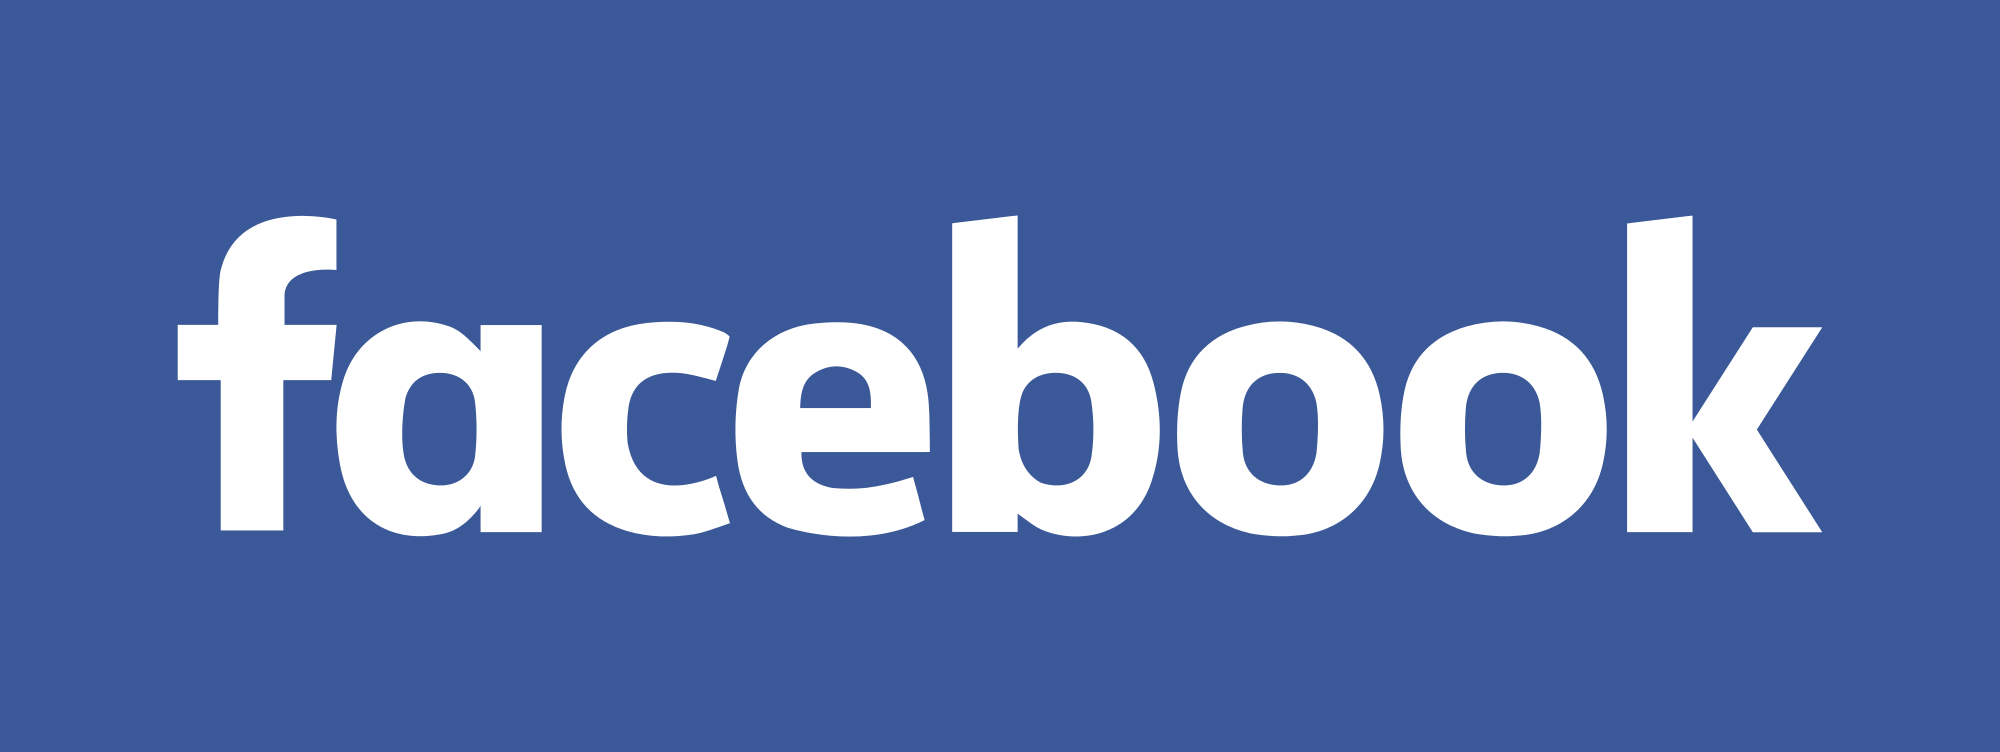 Facebook va alerter les utilisateurs lorsque le gouvernement espionnera leur compte